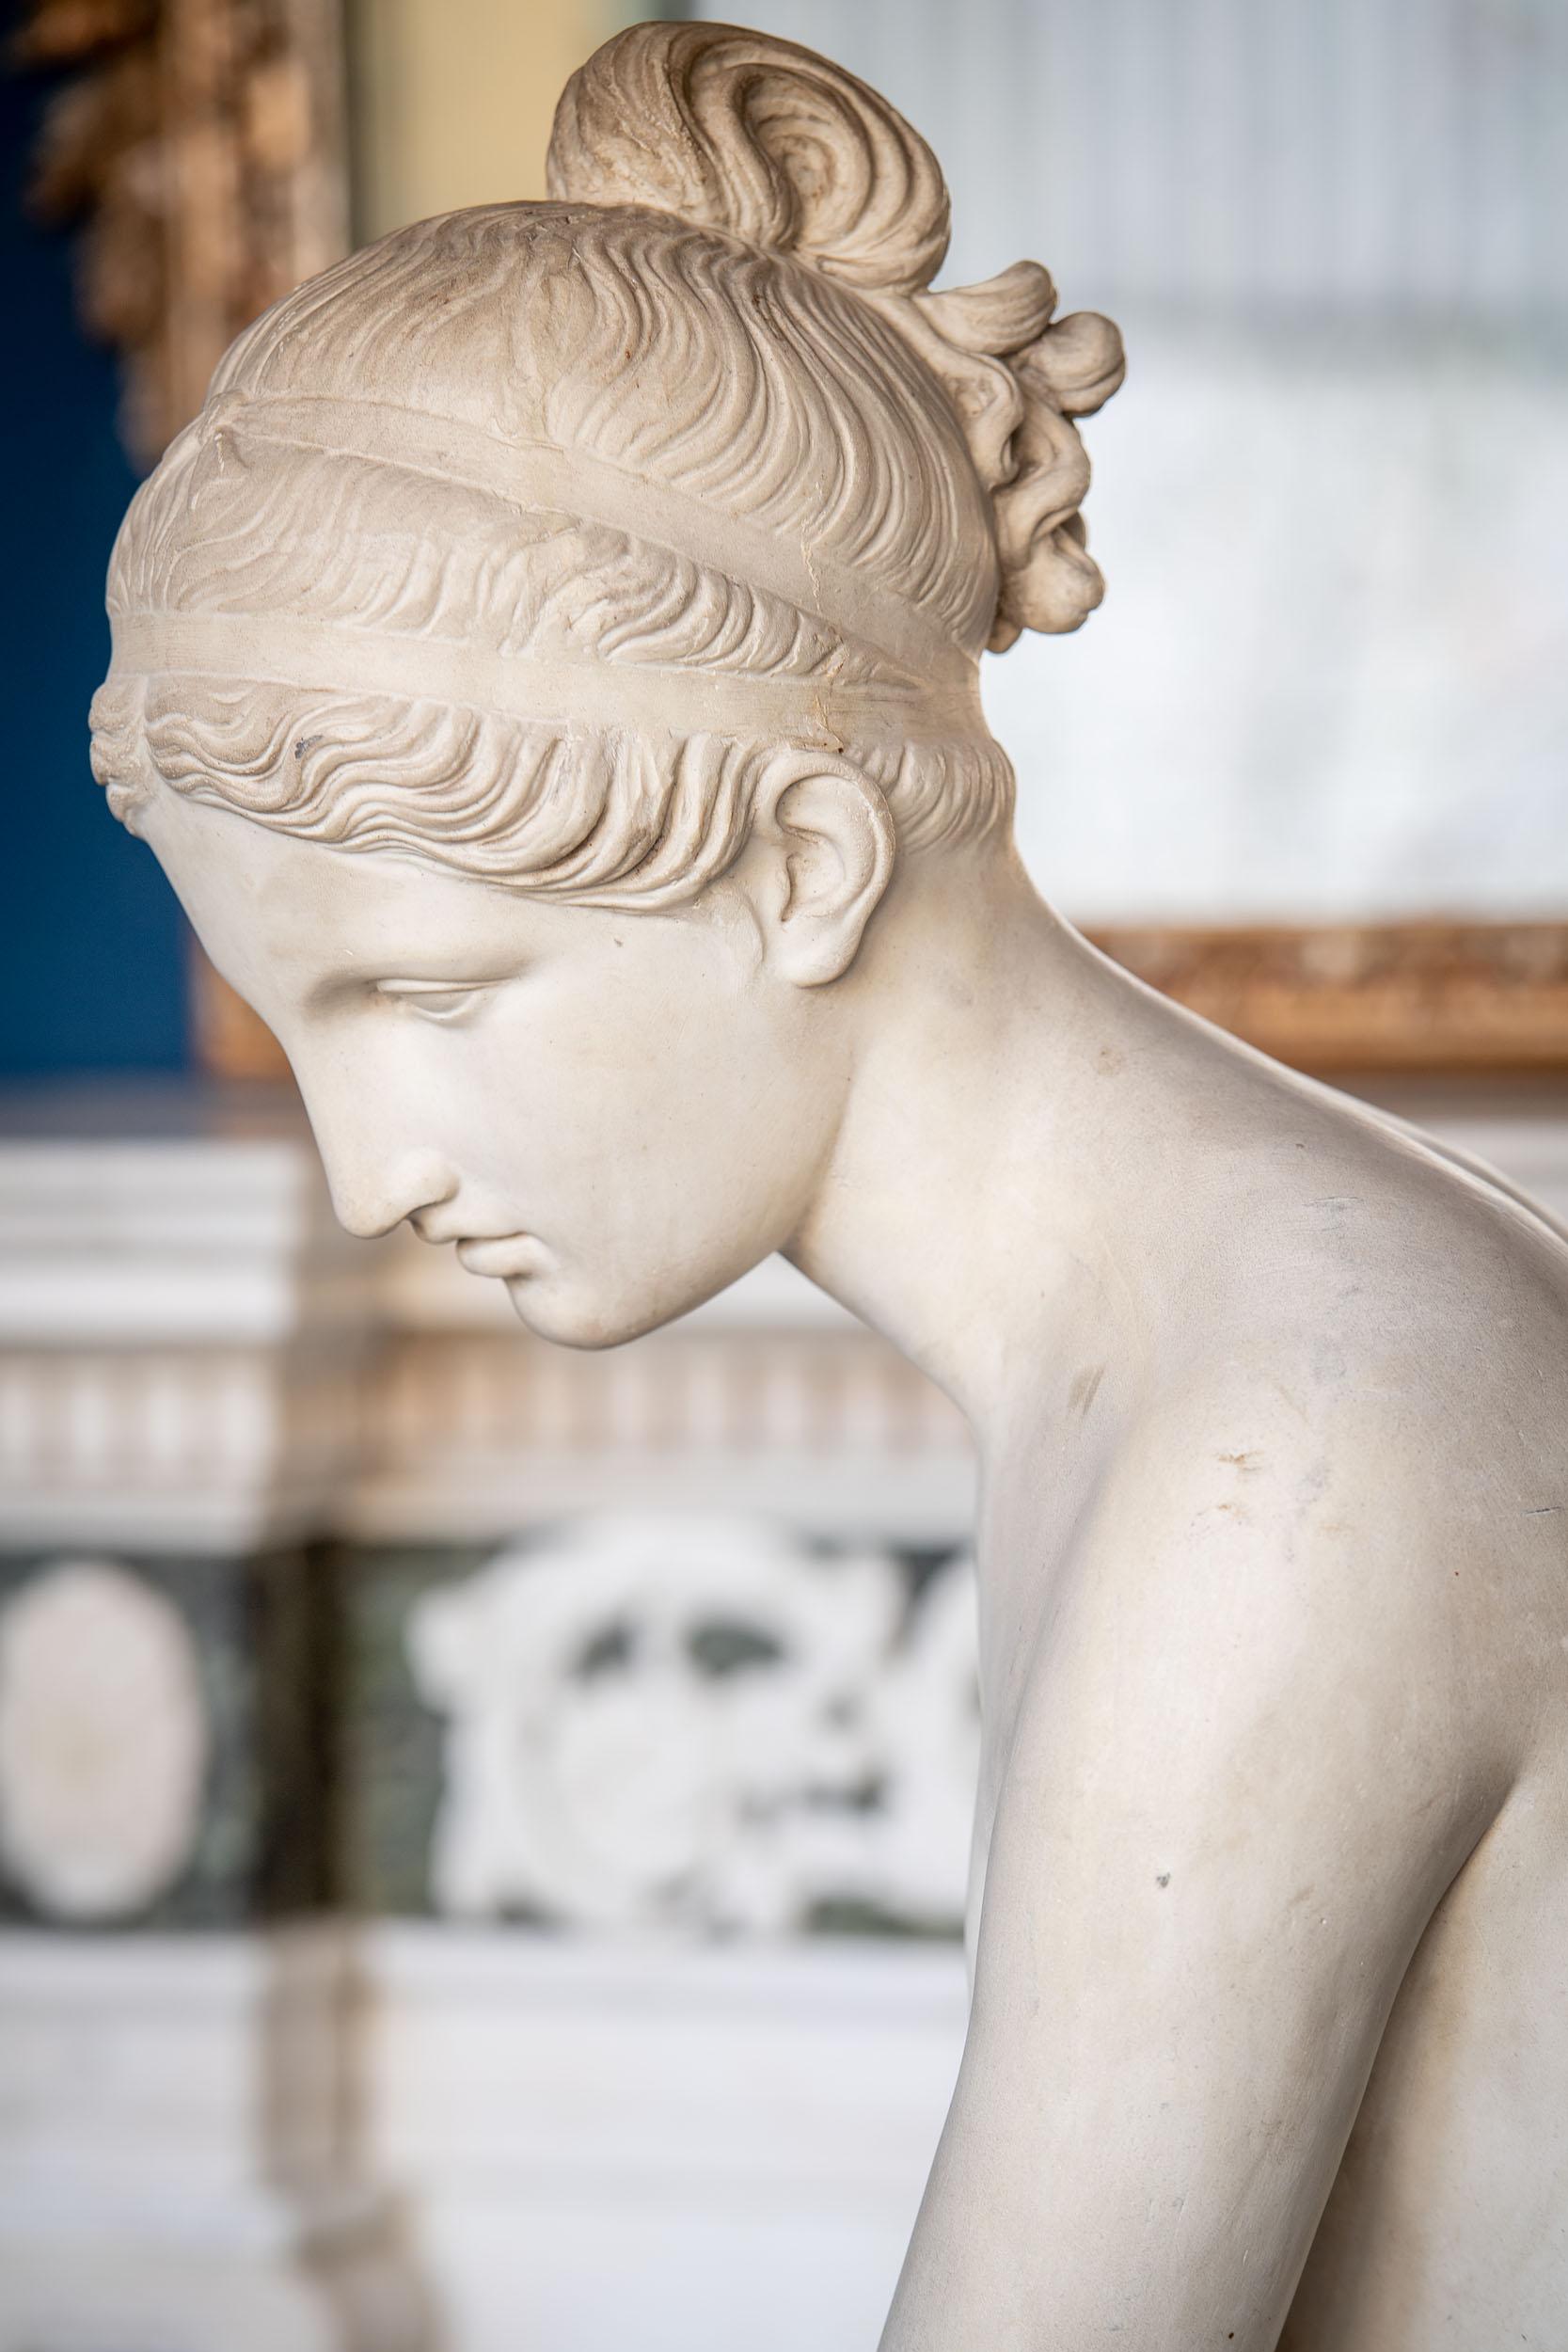 Rare sculpture italienne représentant Psyché, attribuée au sculpteur italien Pietro Tenerani.

Pietro Tenerani (1798-1869) était un sculpteur peut-être plus connu pour ses œuvres néoclassiques du début du XIXe siècle. Il s'est formé auprès de